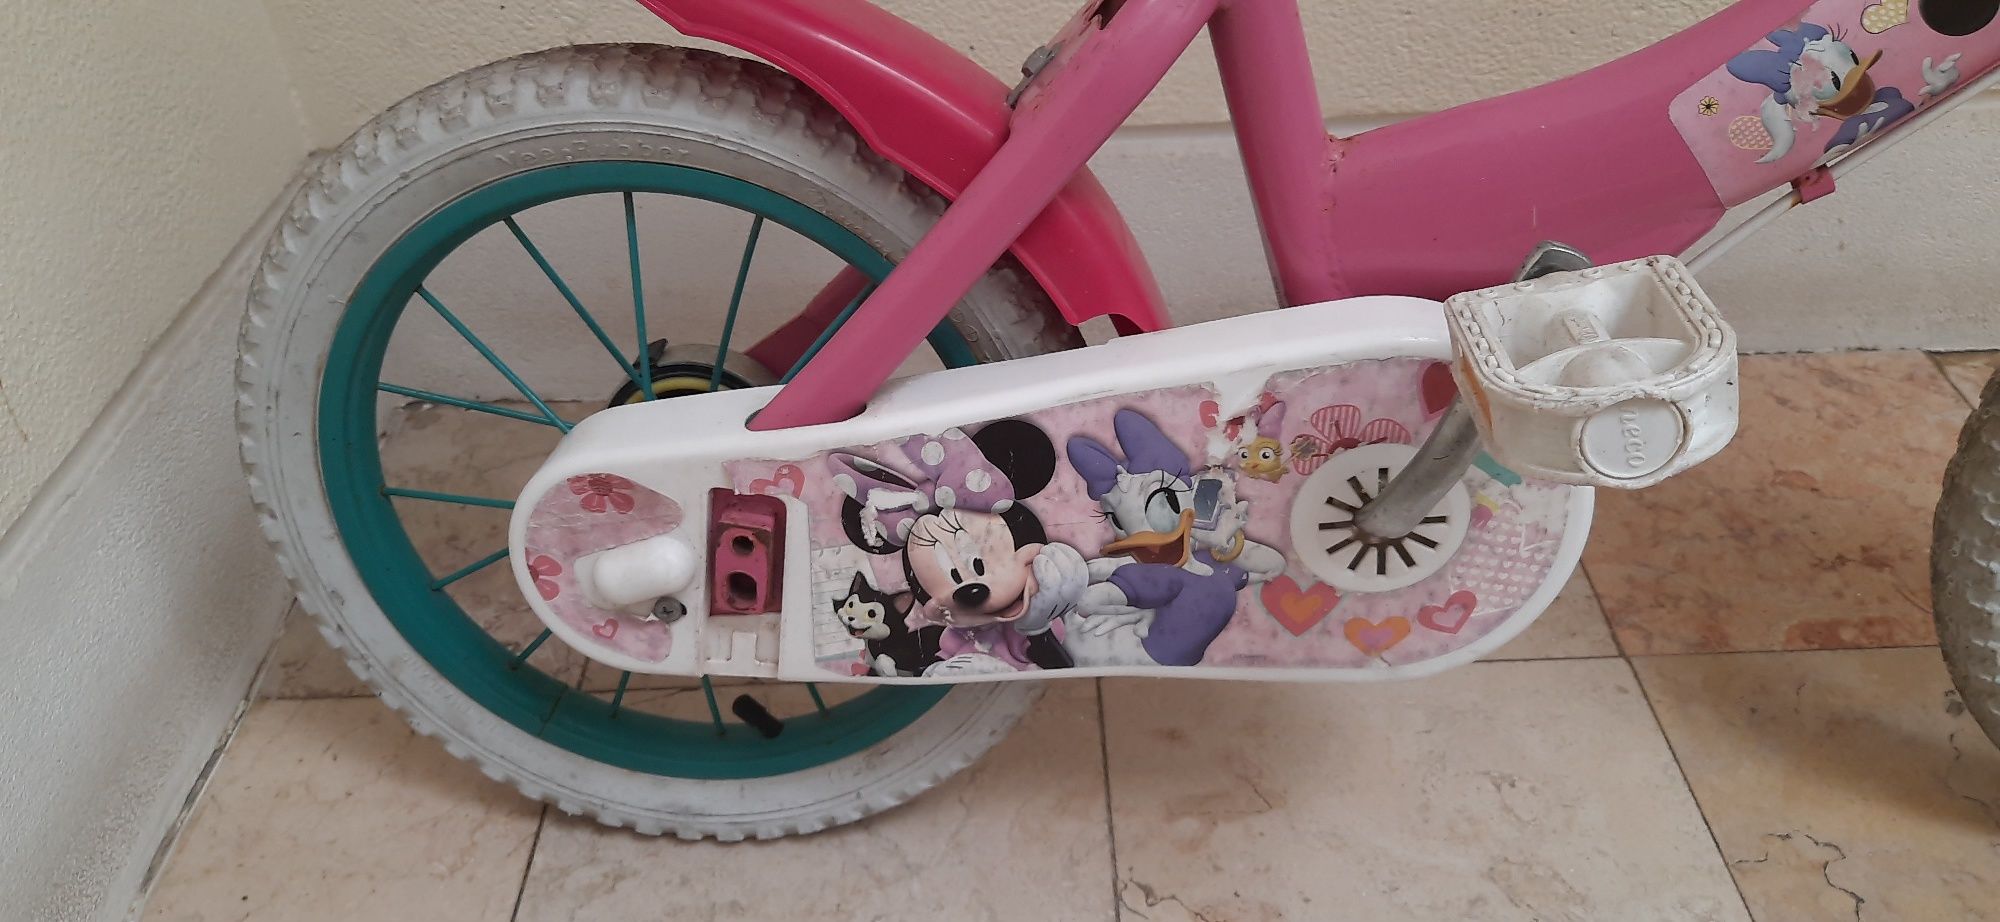 Bicicleta  Minnie de criança dos 4-6 anos roda 14"